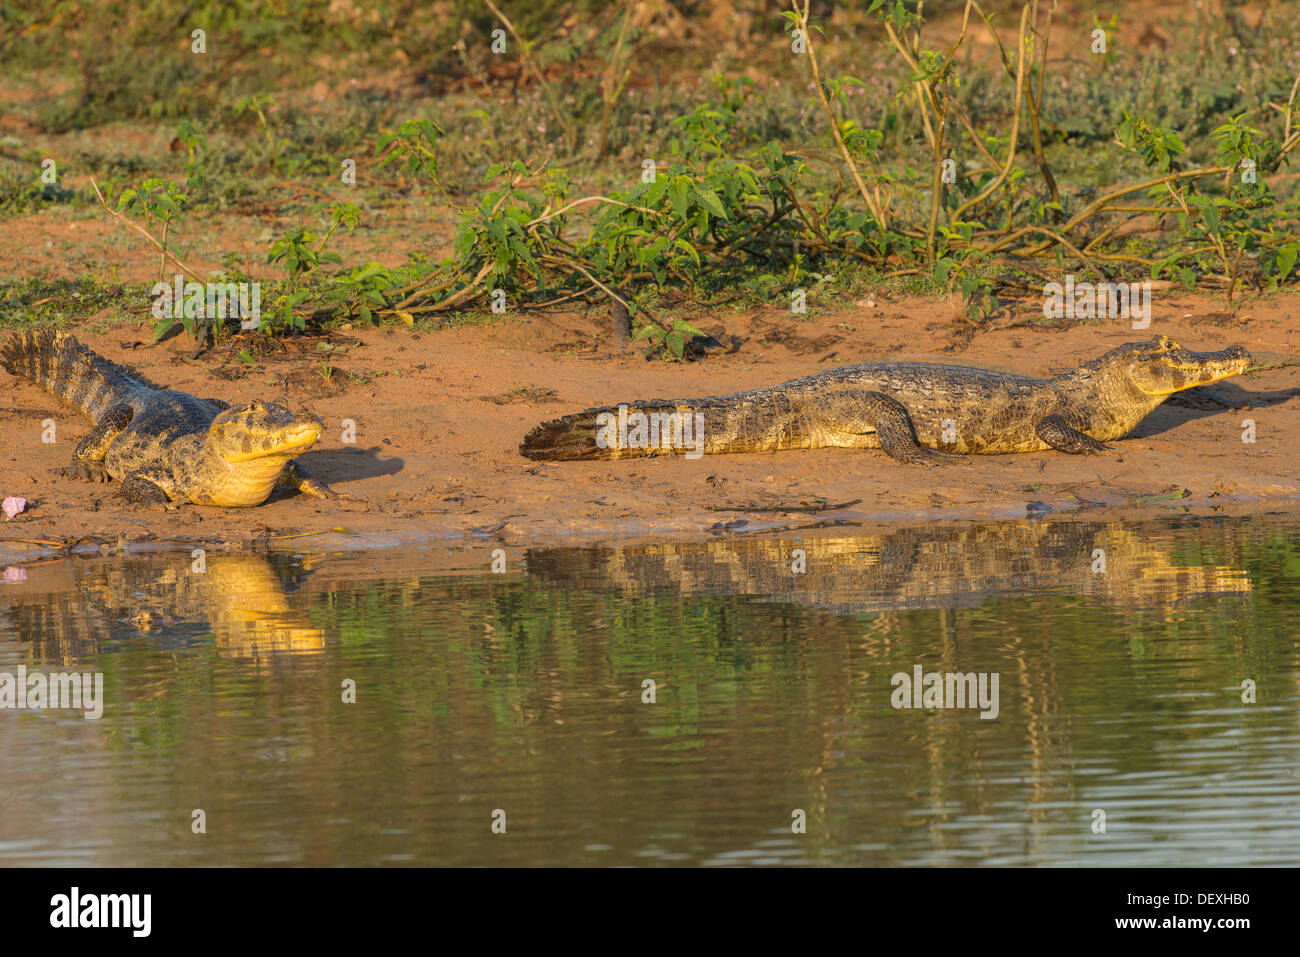 Stock Foto von brillentragende Kaimane ruht auf einem Rivebank, Pantanal, Brasilien. Stockfoto